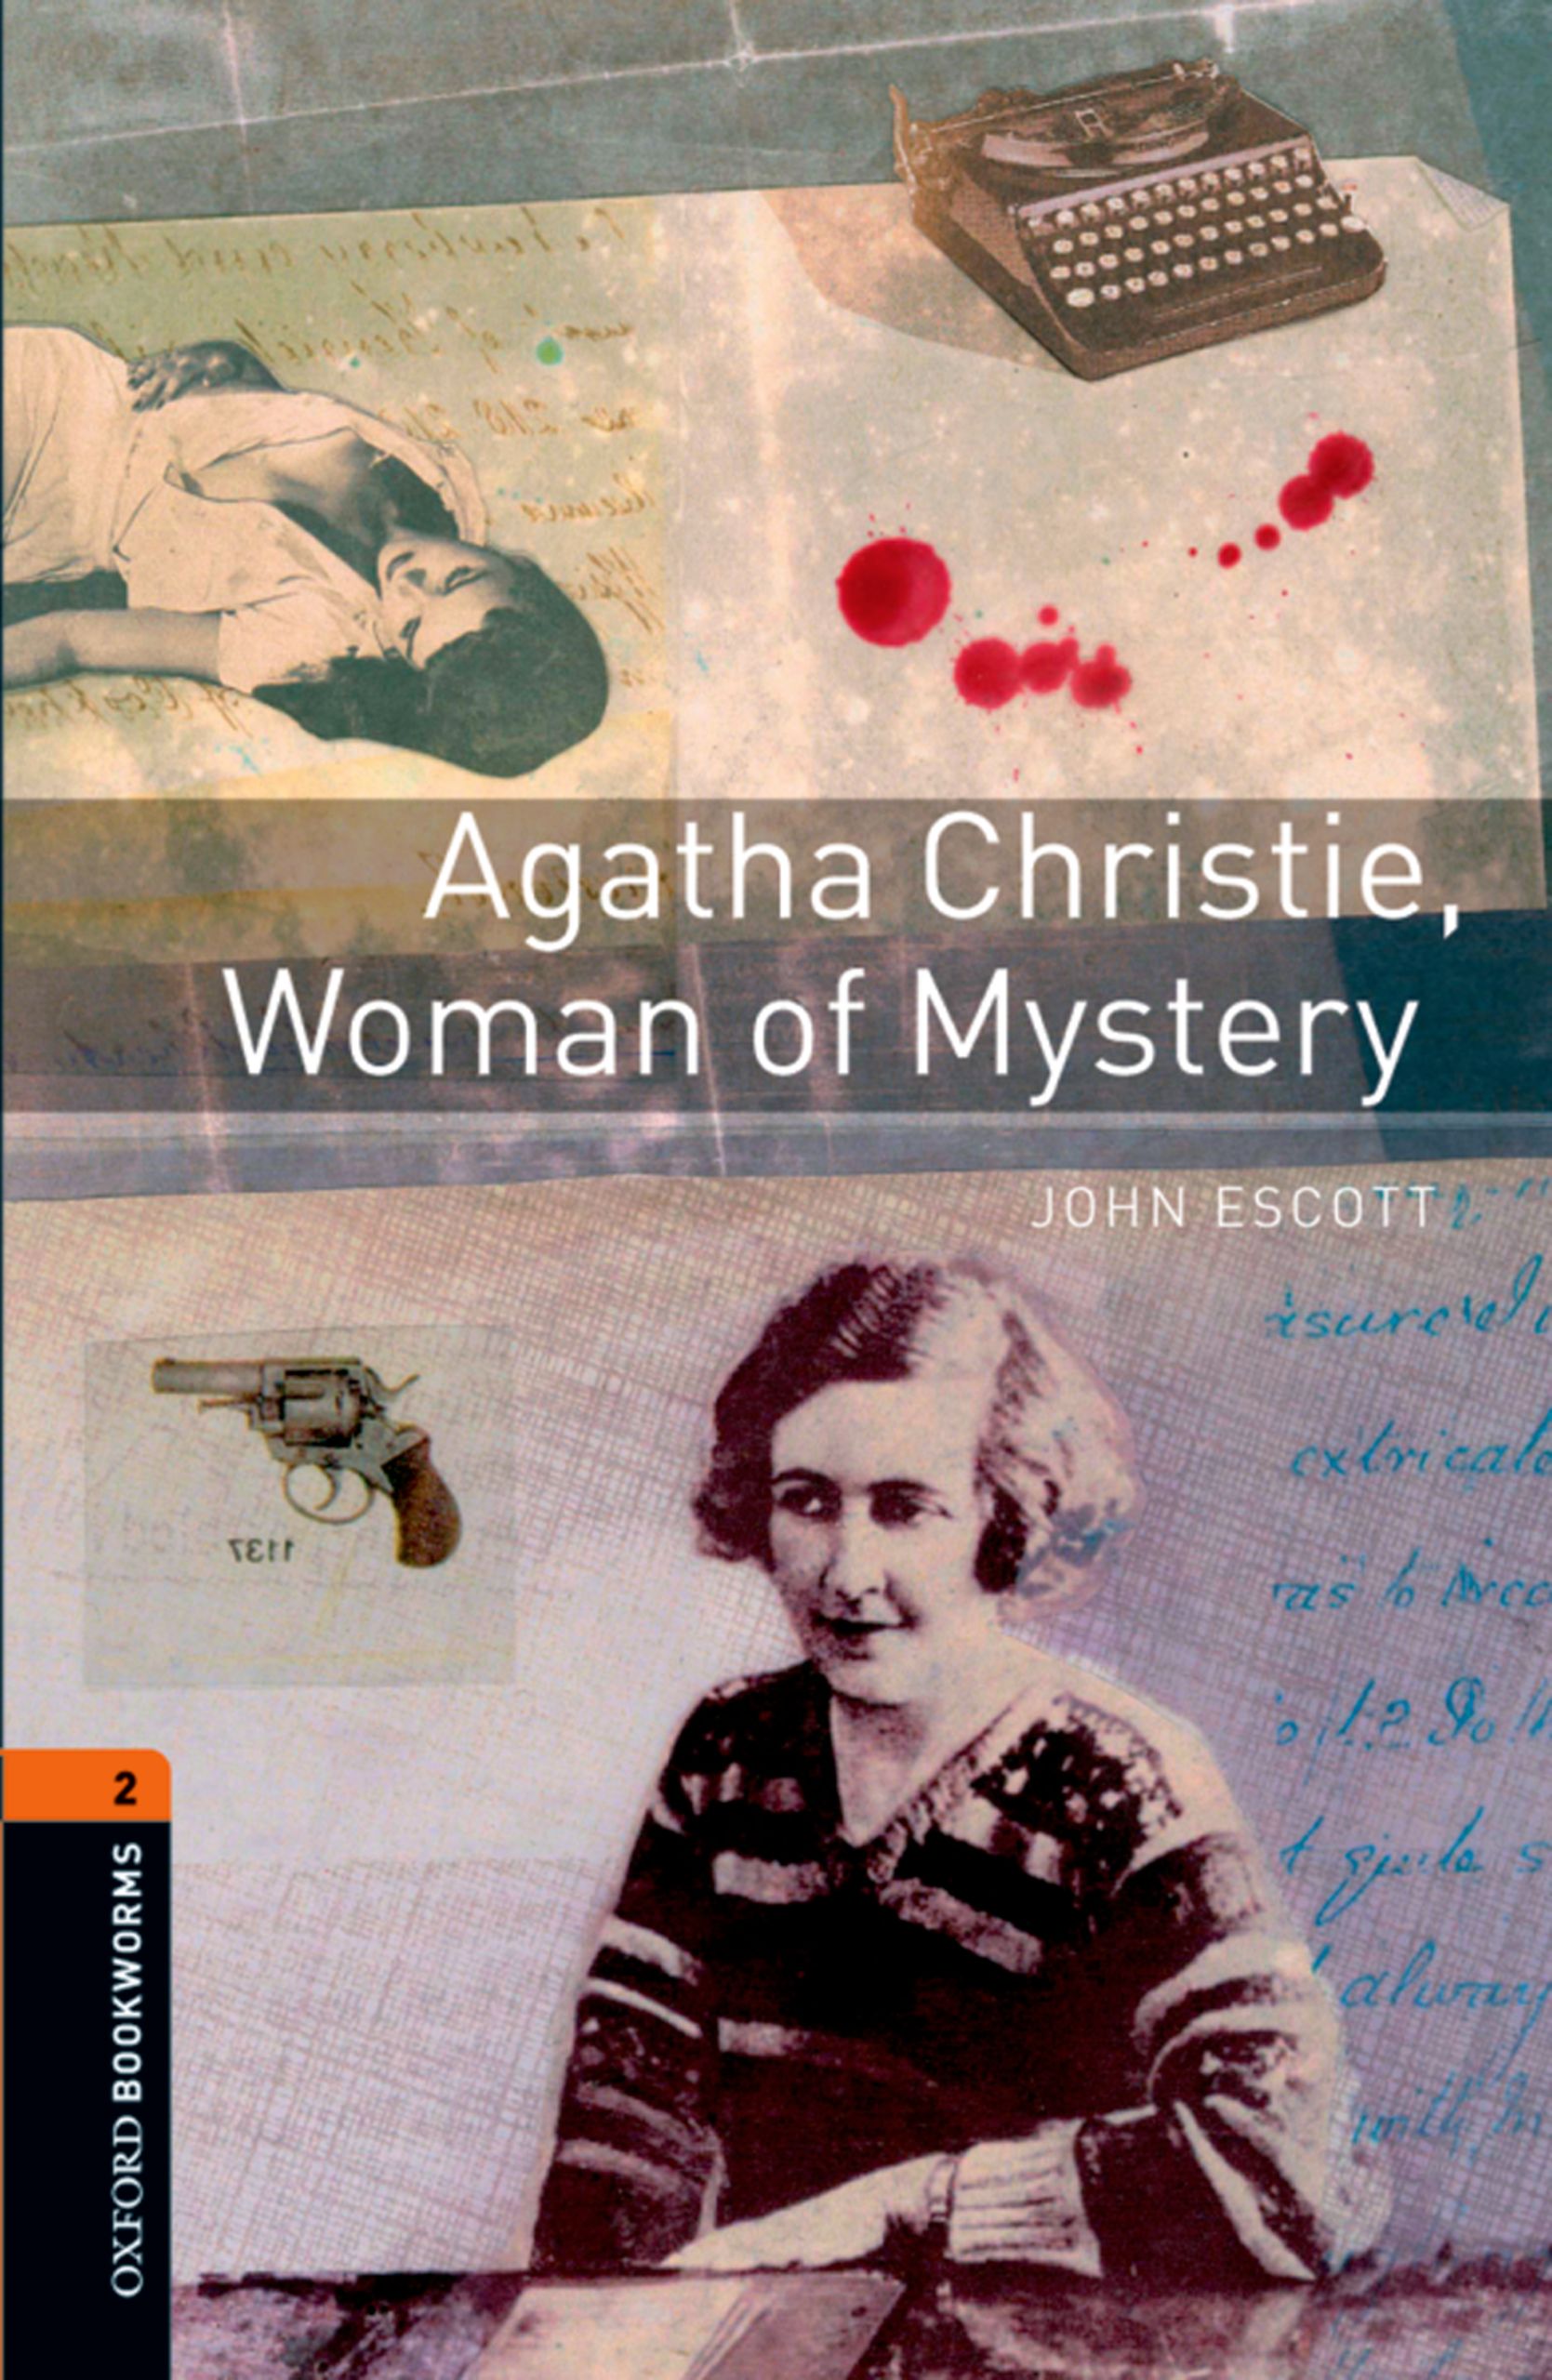 Книга Agatha Christie, Woman of Mystery из серии , созданная John Escott, может относится к жанру Иностранные языки, Зарубежная образовательная литература, Иностранные языки. Стоимость электронной книги Agatha Christie, Woman of Mystery с идентификатором 23572852 составляет 405.87 руб.